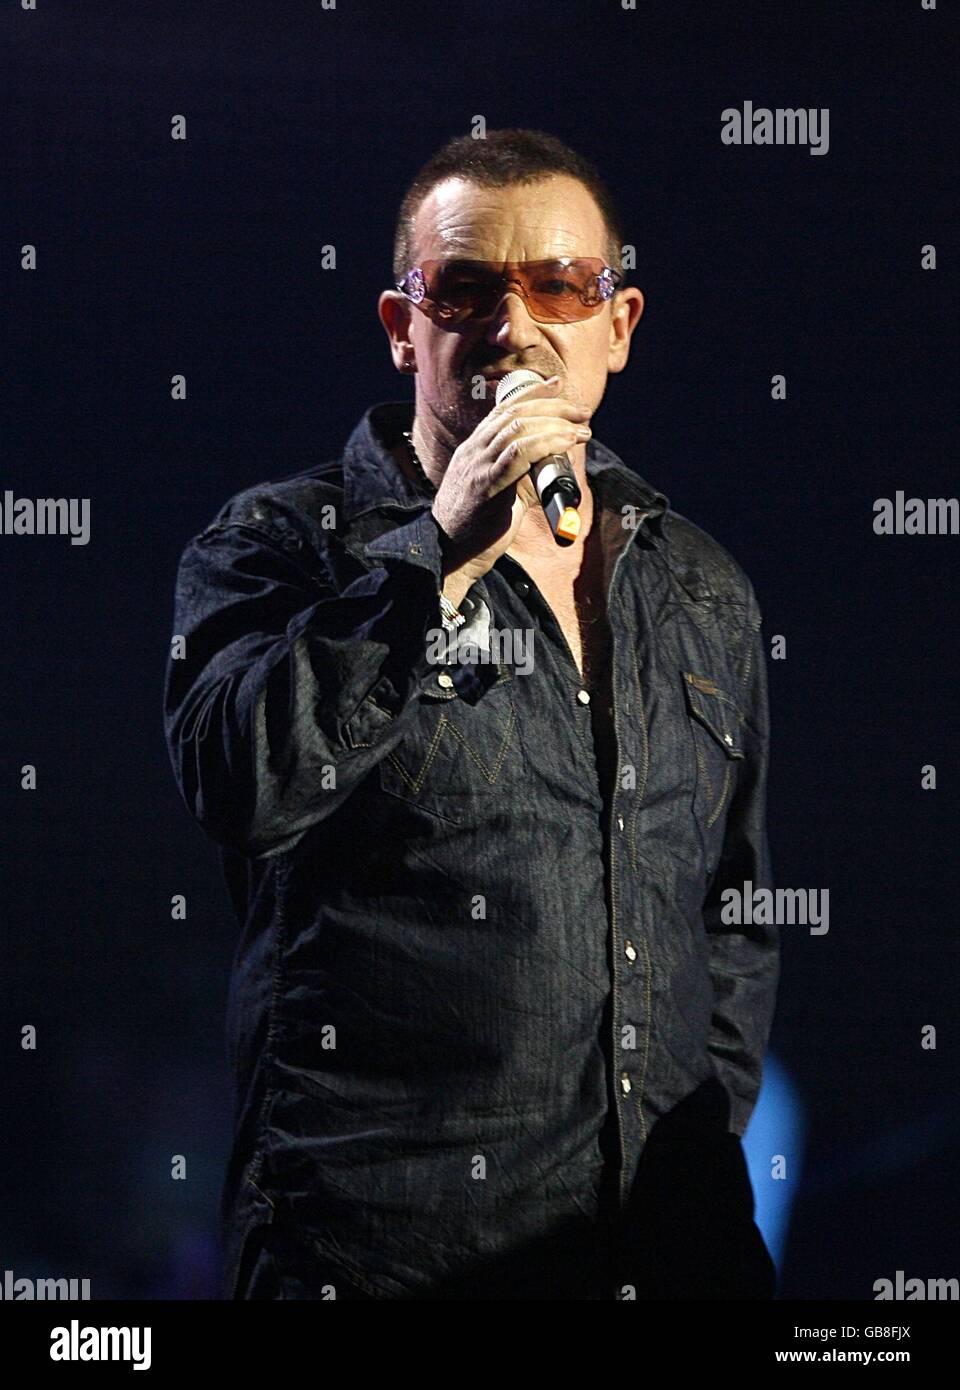 MTV Europe Music Video Awards - Show - Liverpool. Bono von U2 auf der Bühne während der MTV Europe Music Video Awards 2008 in der Echo Arena, Liverpool. Stockfoto